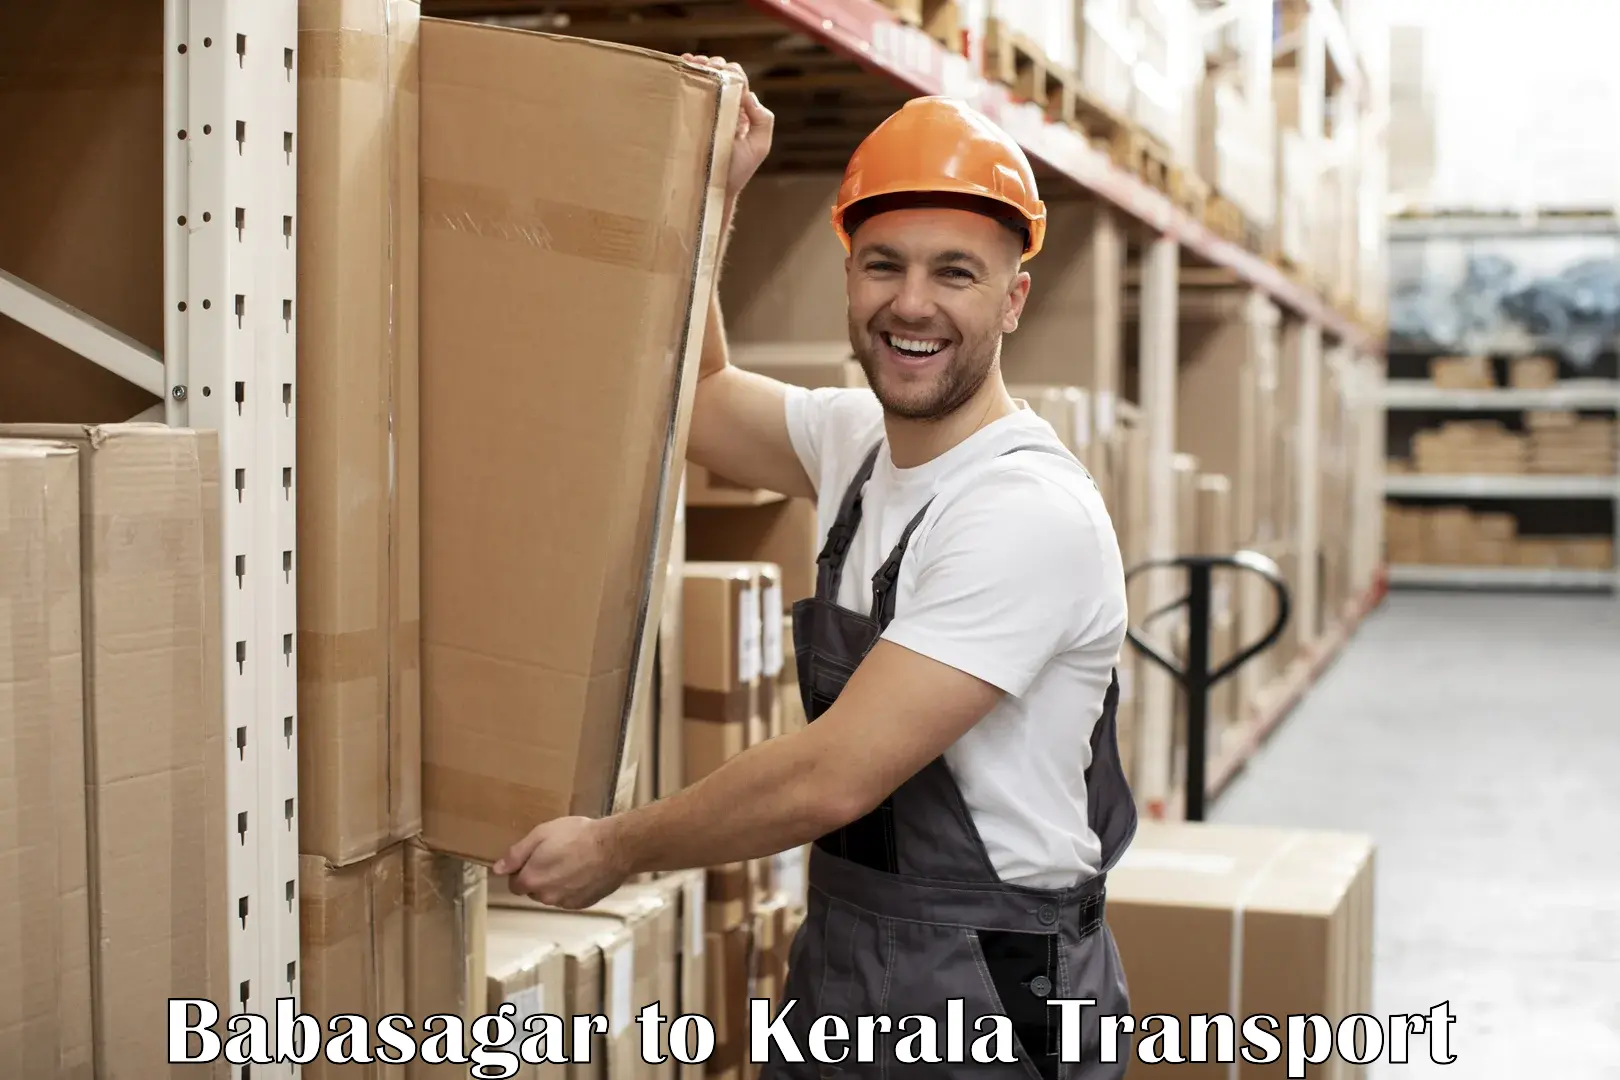 Furniture transport service Babasagar to Kerala